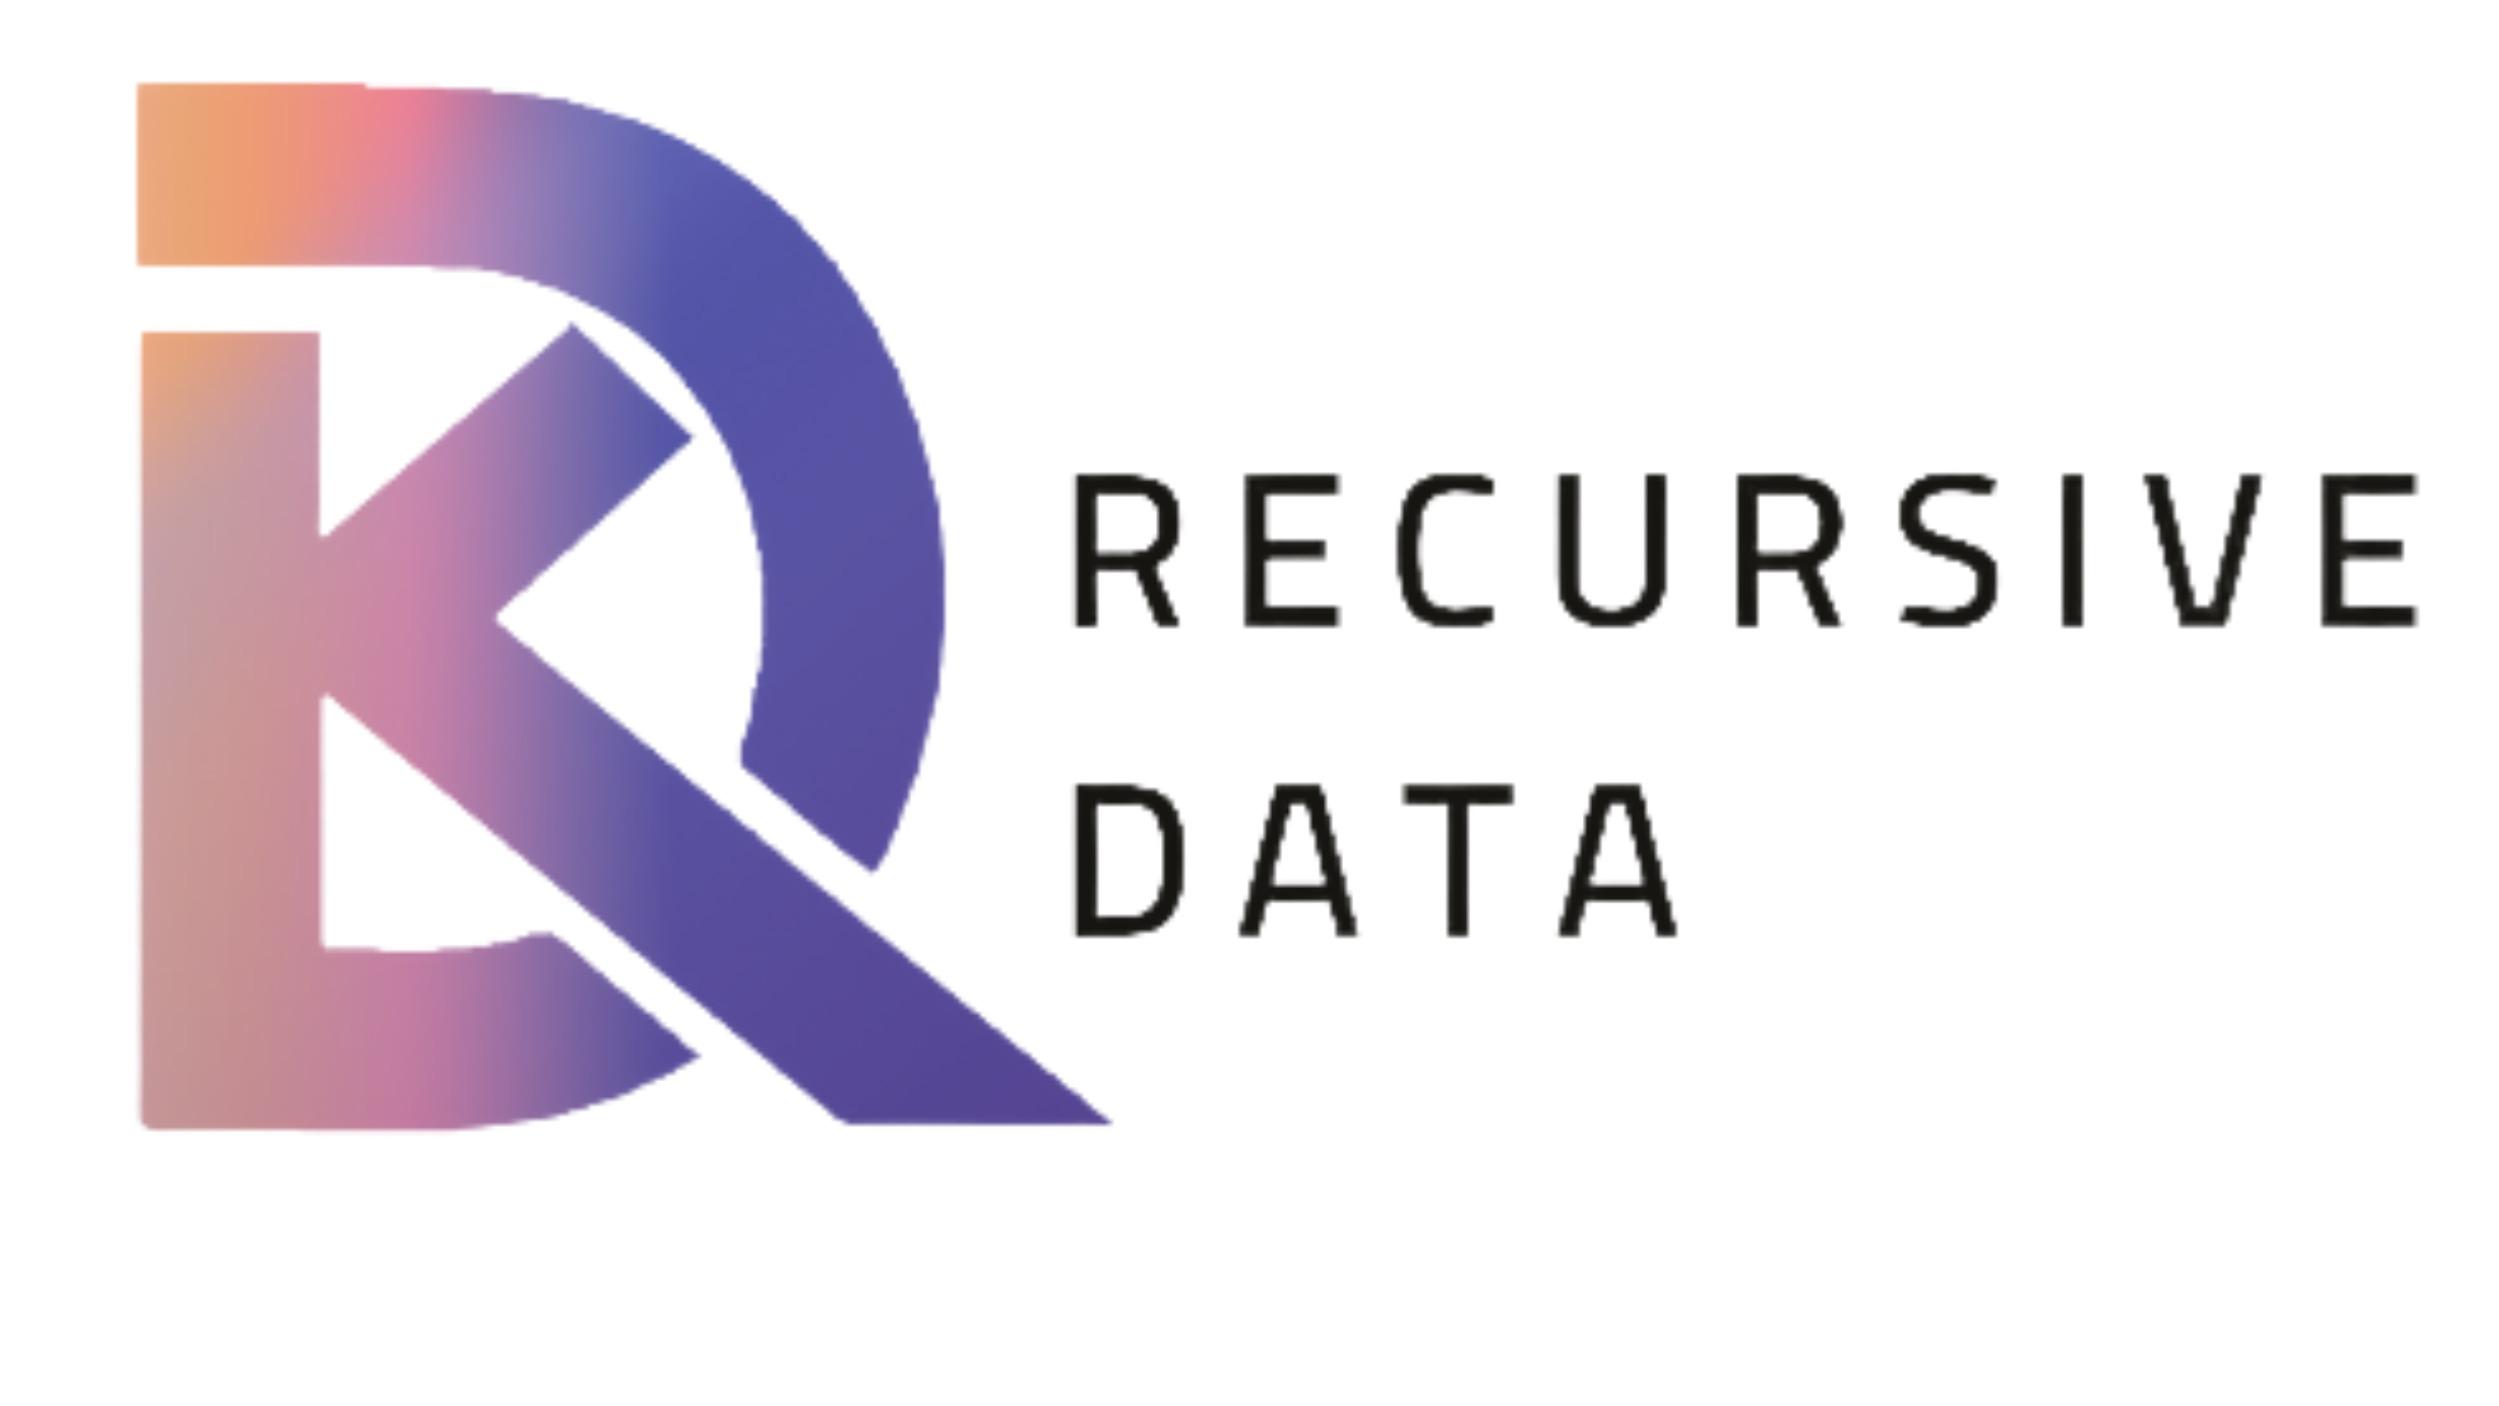 Recursive Data